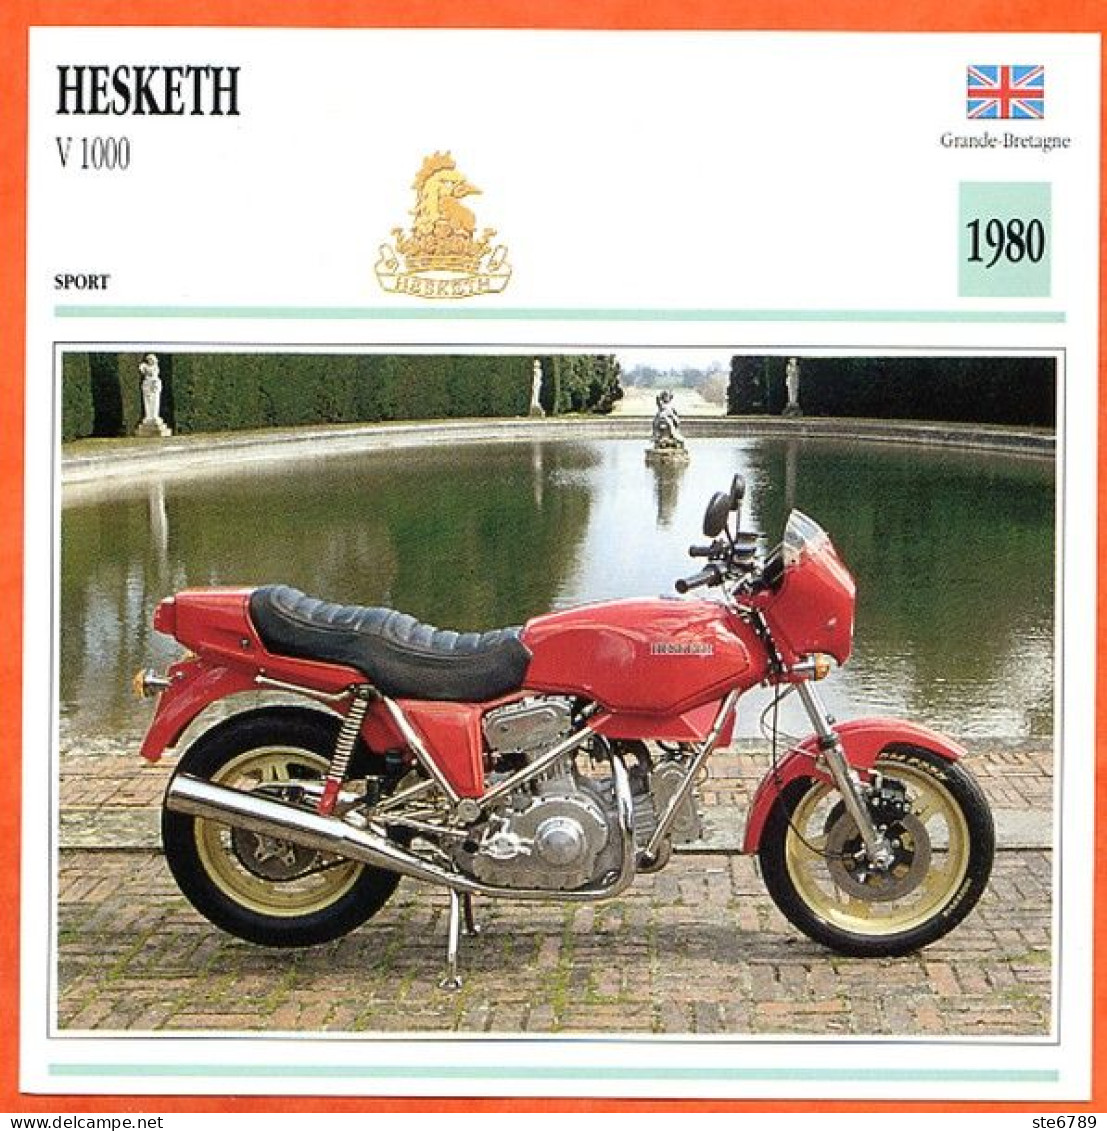 HESKETH V 1000  1980 UK Fiche Technique Moto - Sports